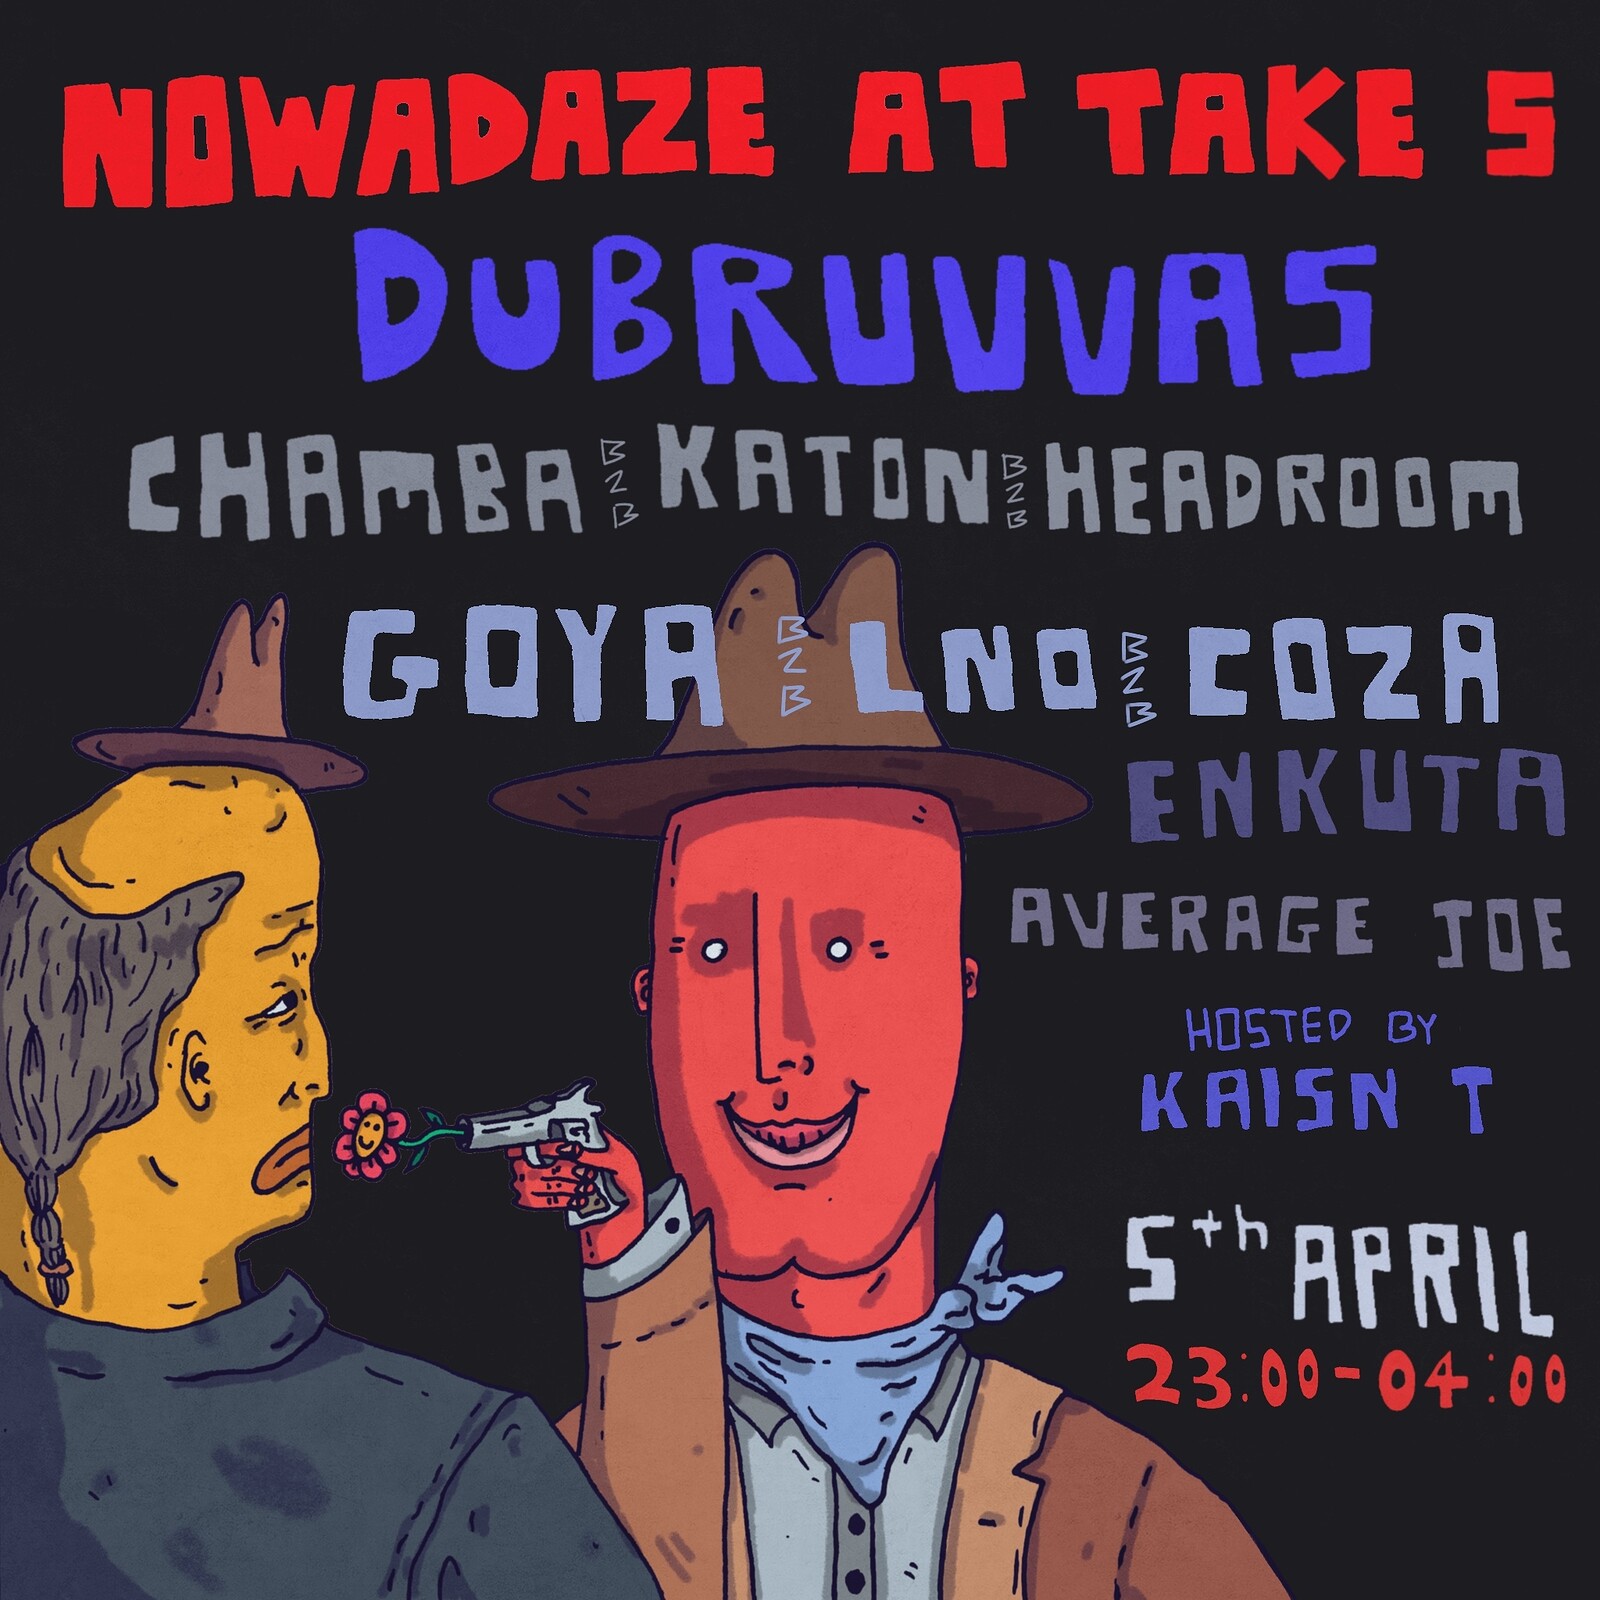 Nowadaze - Dubruvvas bday bash at Take Five Cafe